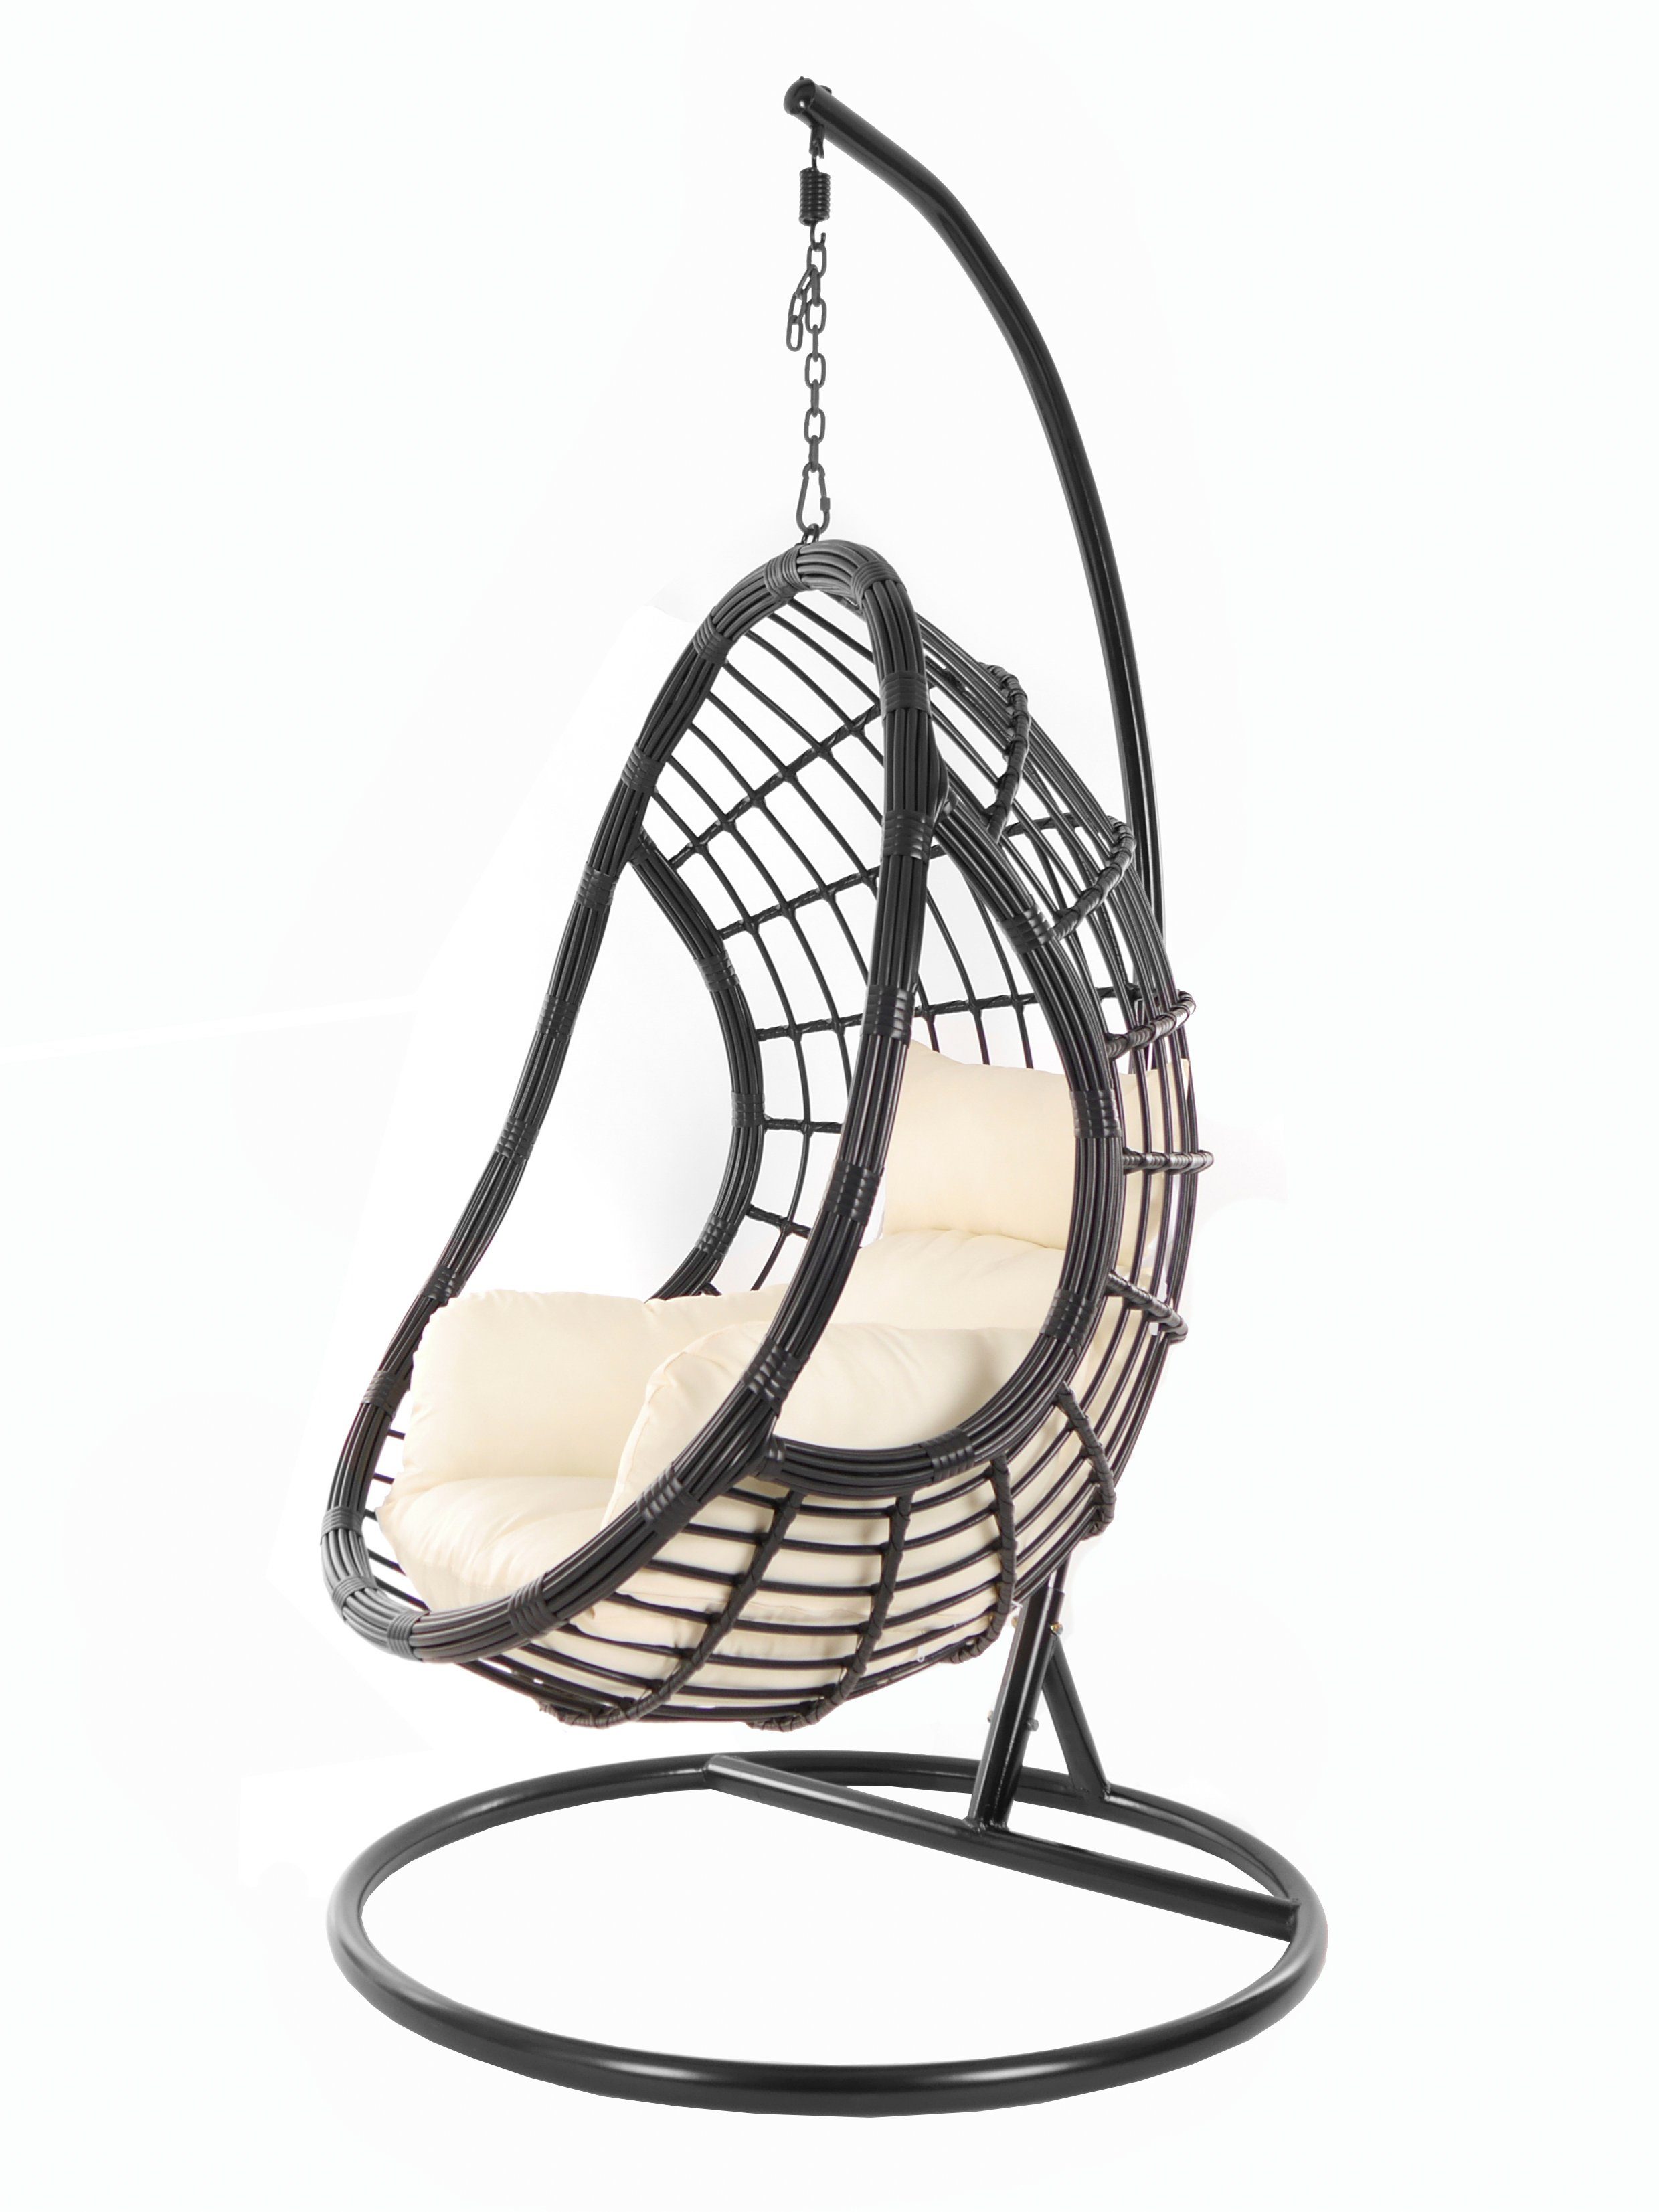 KIDEO Hängesessel PALMANOVA black, Schwebesessel, Swing Chair, Hängesessel mit Gestell und Kissen, Nest-Kissen elfenbein (0050 ivory)